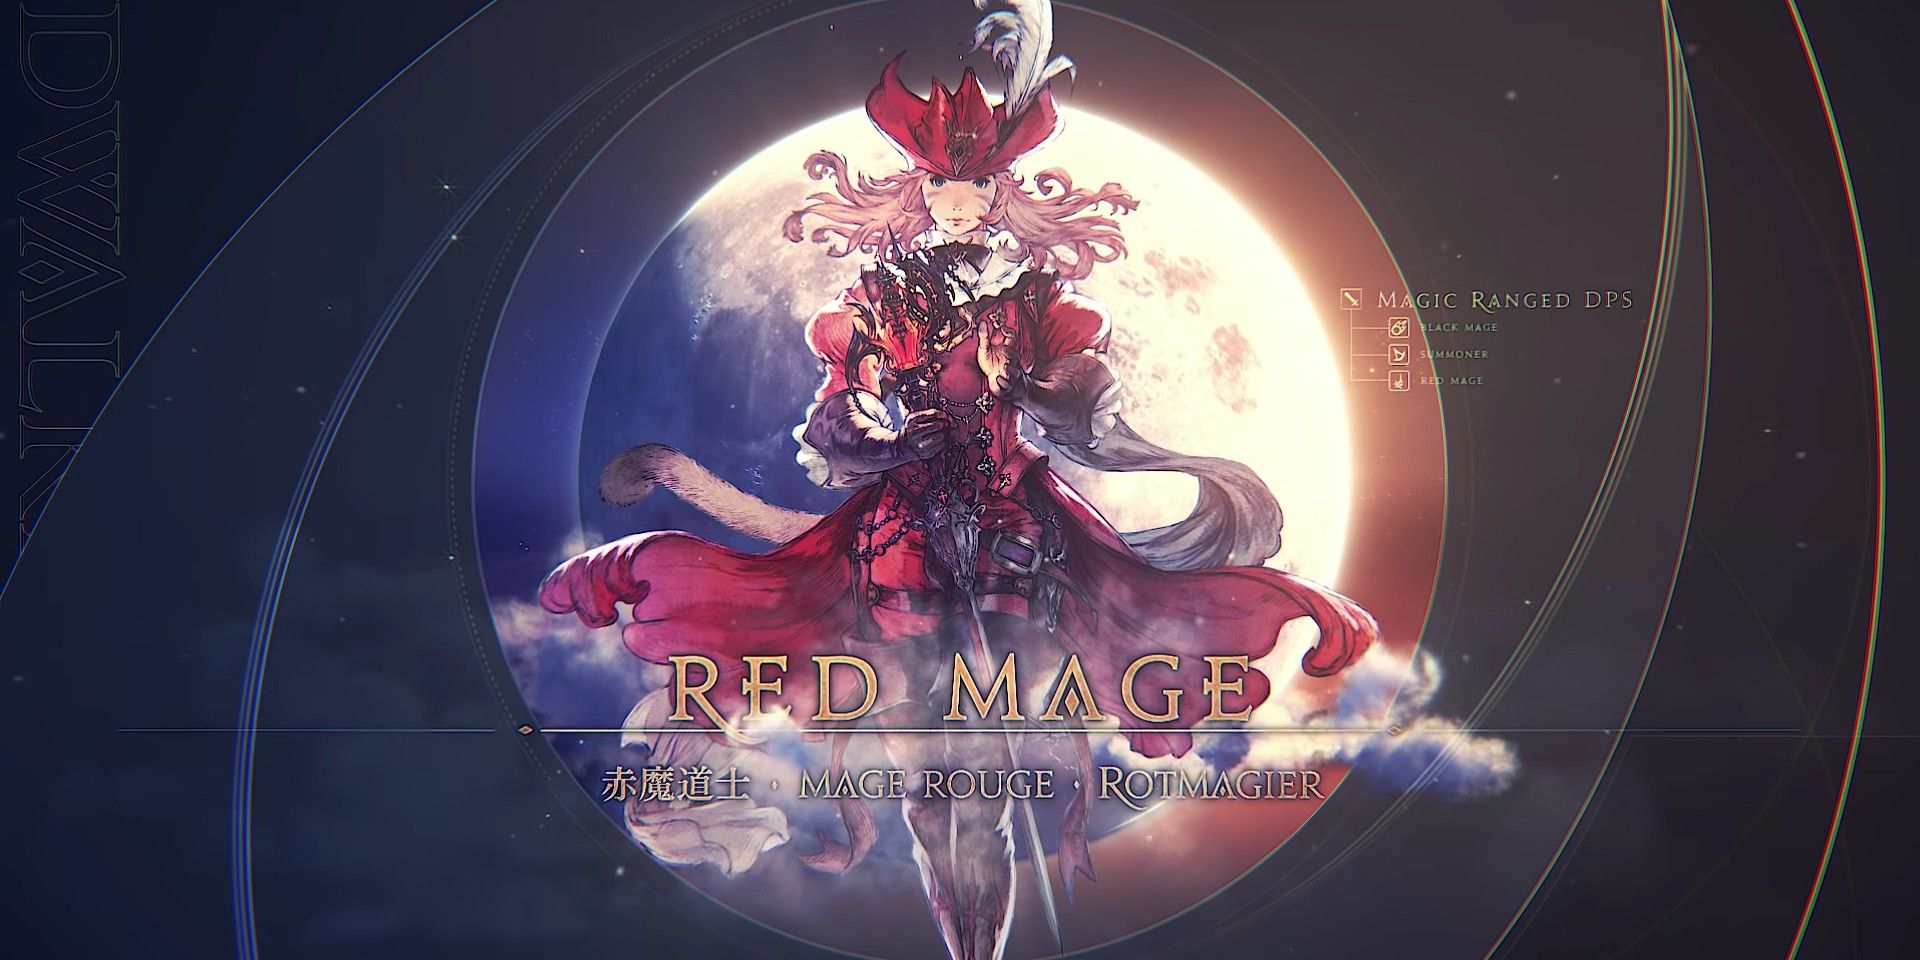 Final Fantasy XIV Endwalker Red Mage In Job Changes Video